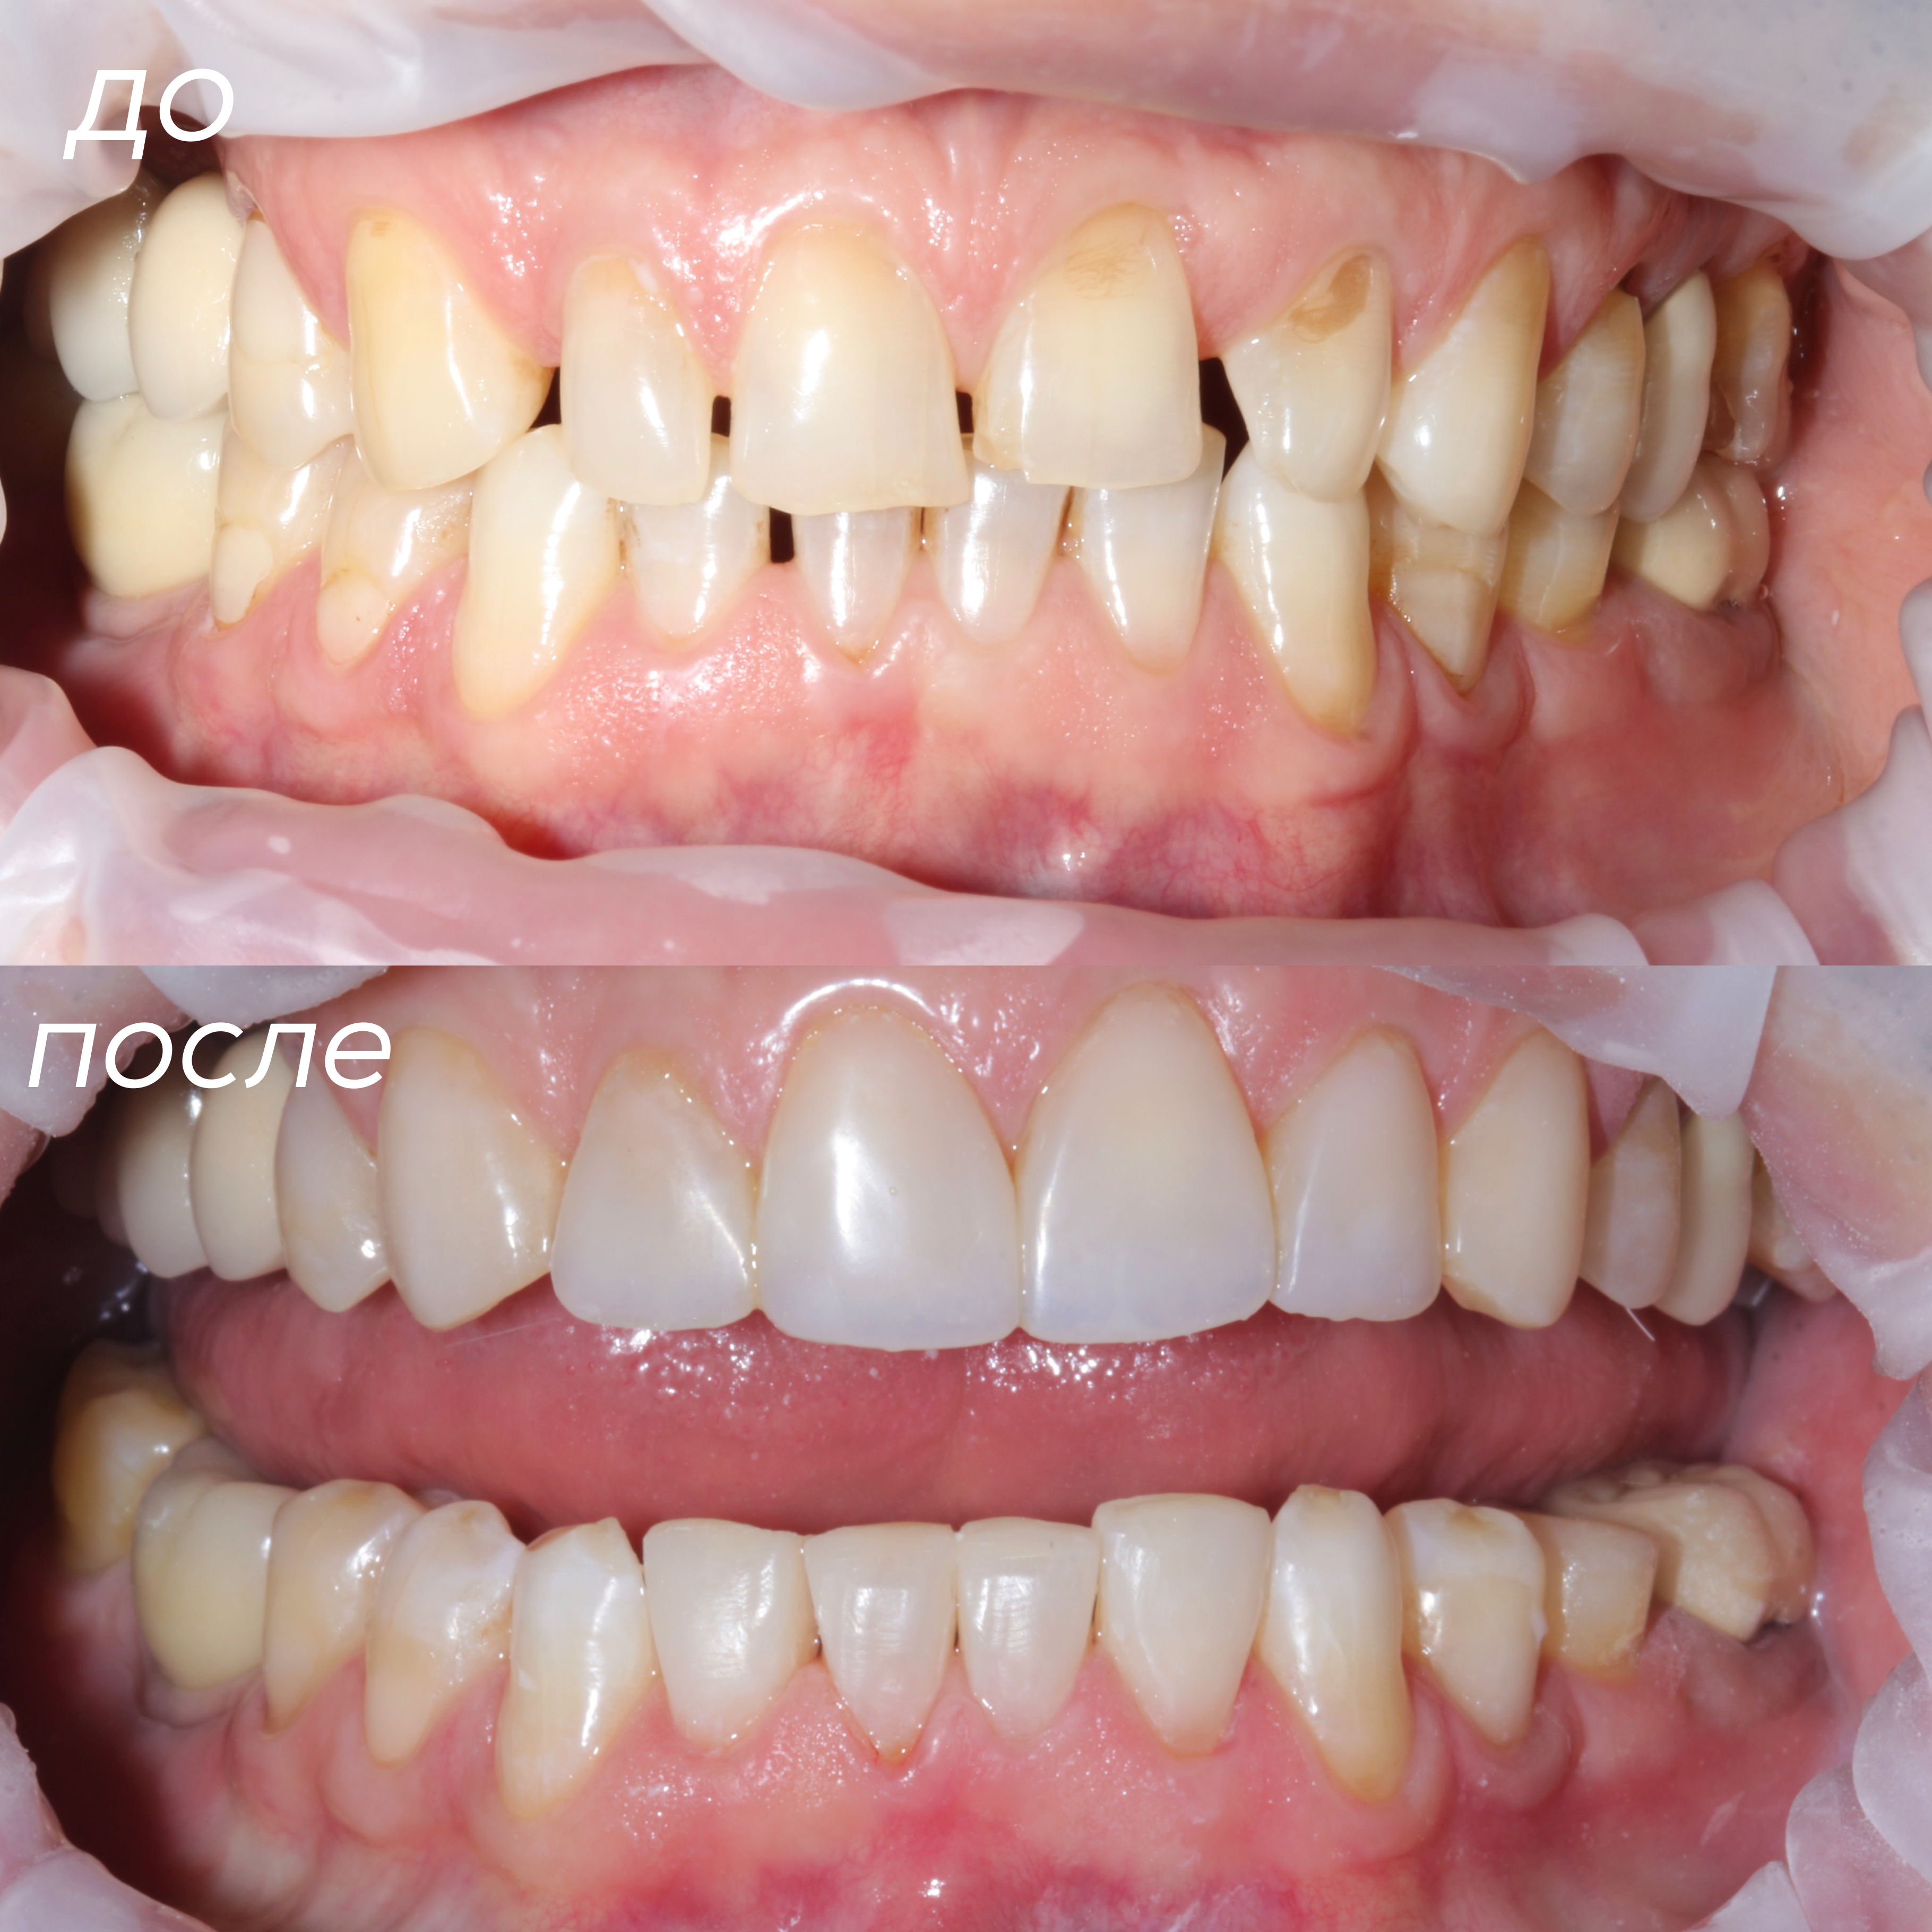 Гавриленко И.С. , Закрытие диастем (щели между передними зубами) с помощью художественной реставрации 